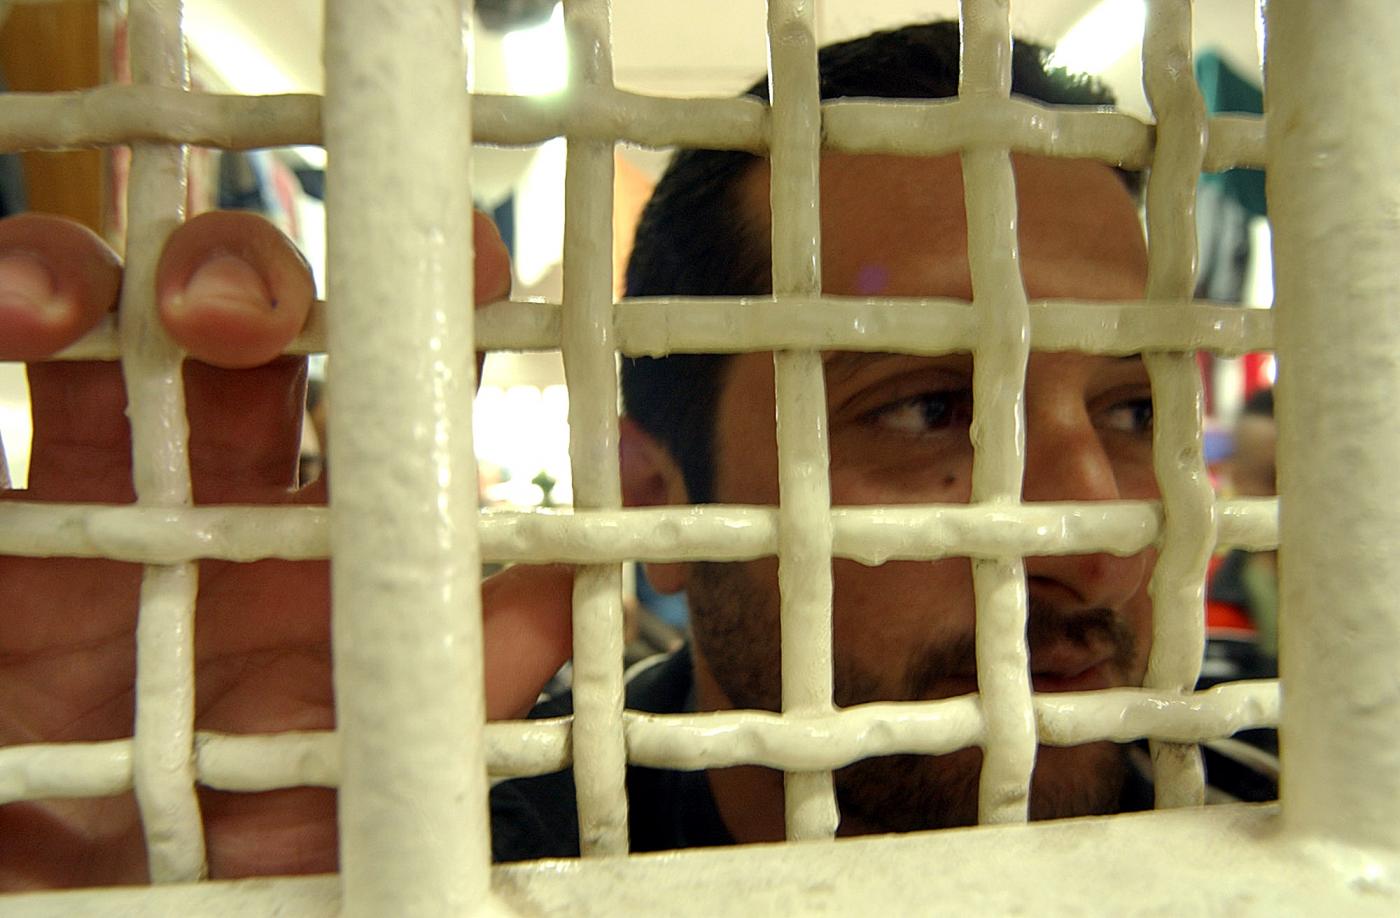 Letti, scalda-acqua e libri: come gli scioperi della fame hanno trasformato le celle dei prigionieri palestinesi.